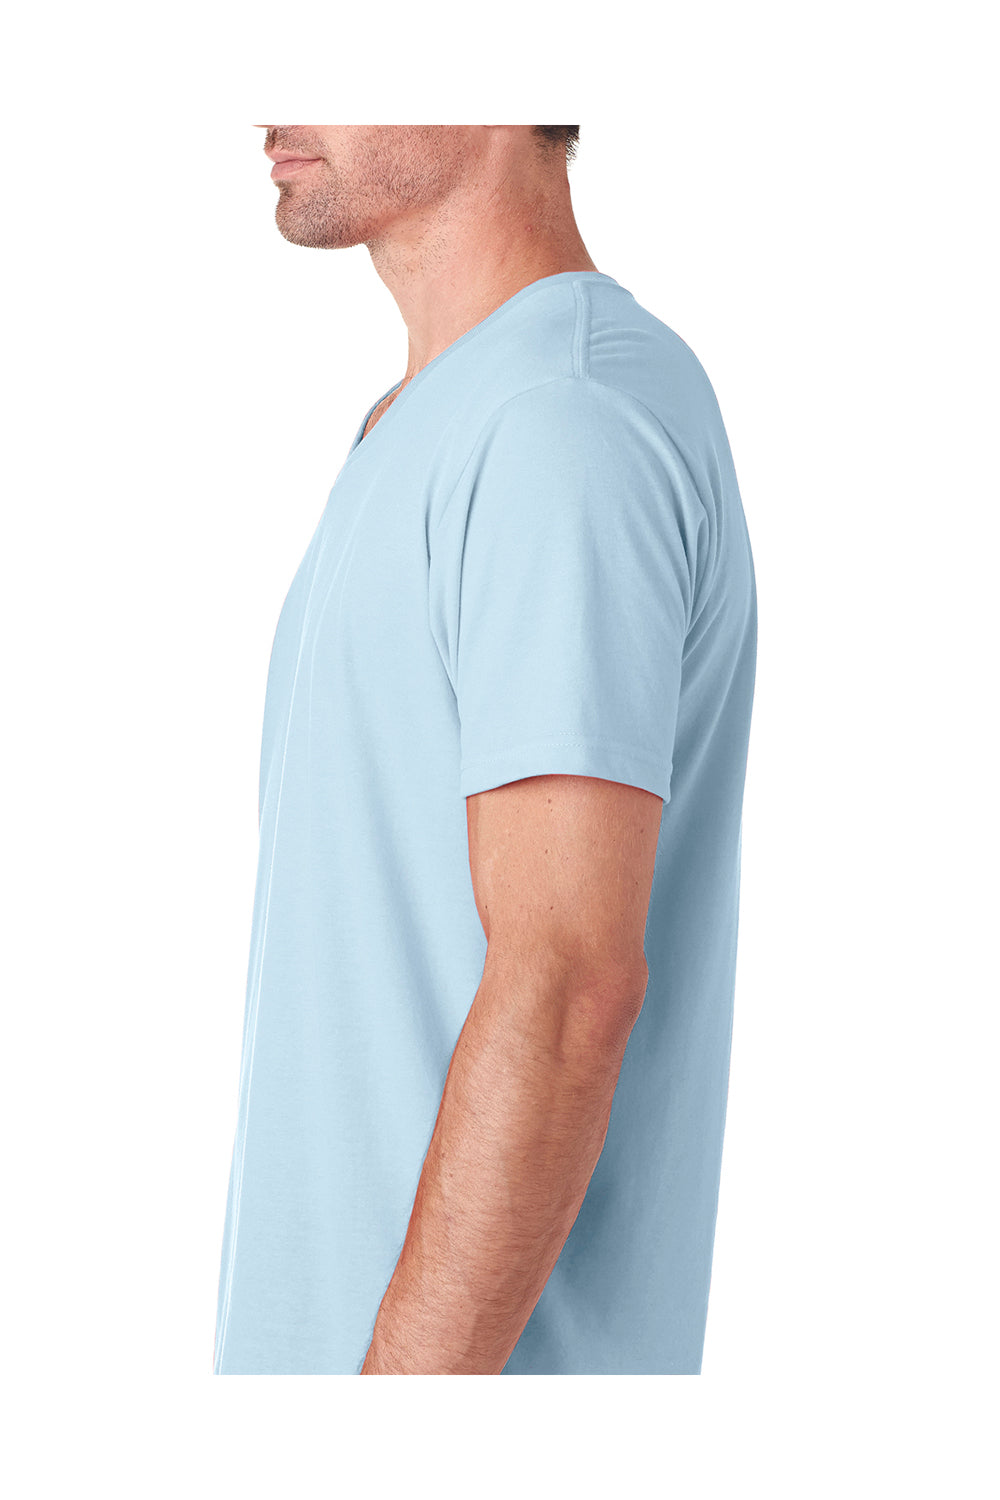 Next Level 6440 Mens Sueded Jersey Short Sleeve V-Neck T-Shirt Light Blue Side